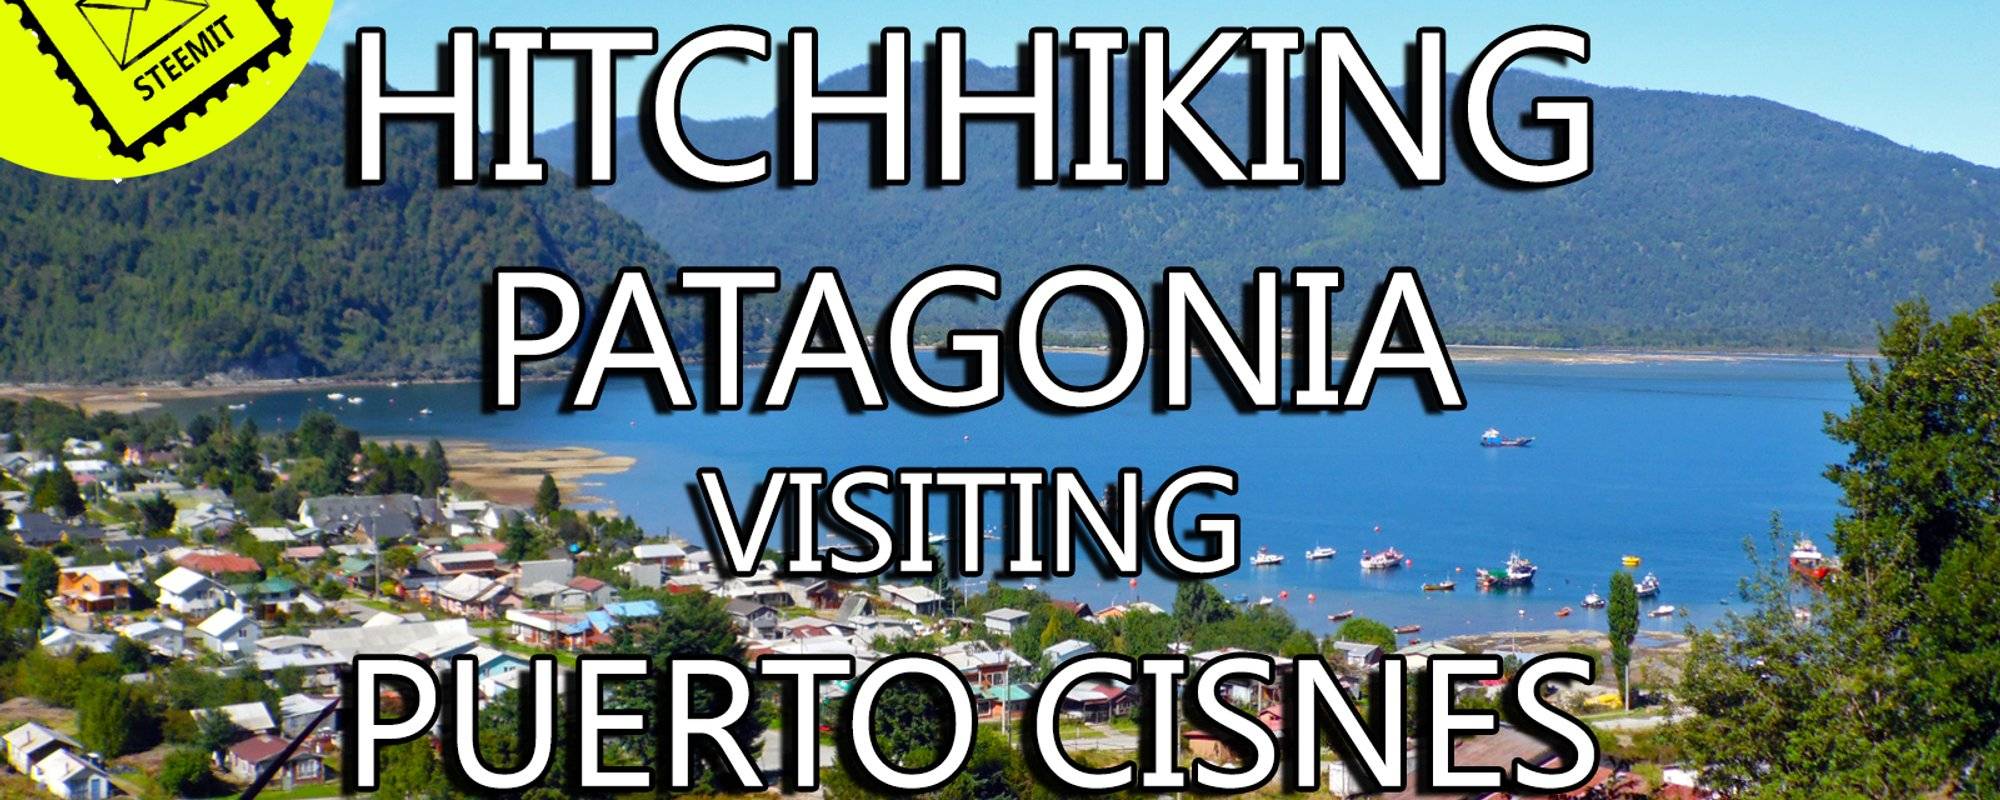 Travel Story: Hitchhiking Patagonia| Puerto Cisnes | Working as Gardner